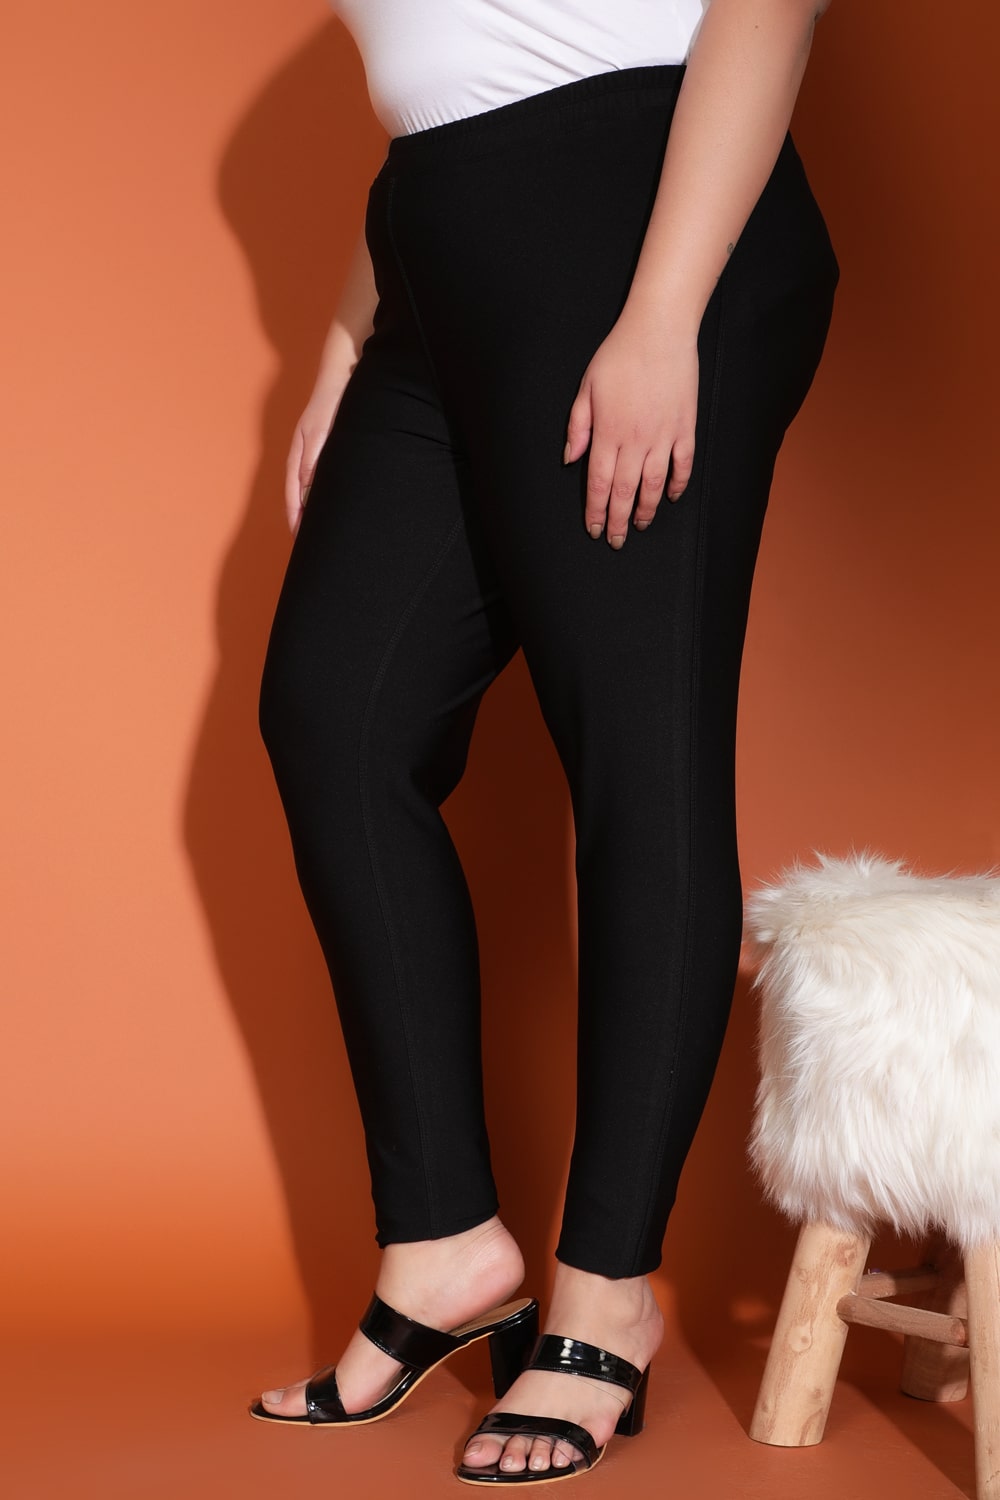 Plus Size Plus Size Black Leggings in Warm Winter Fleece